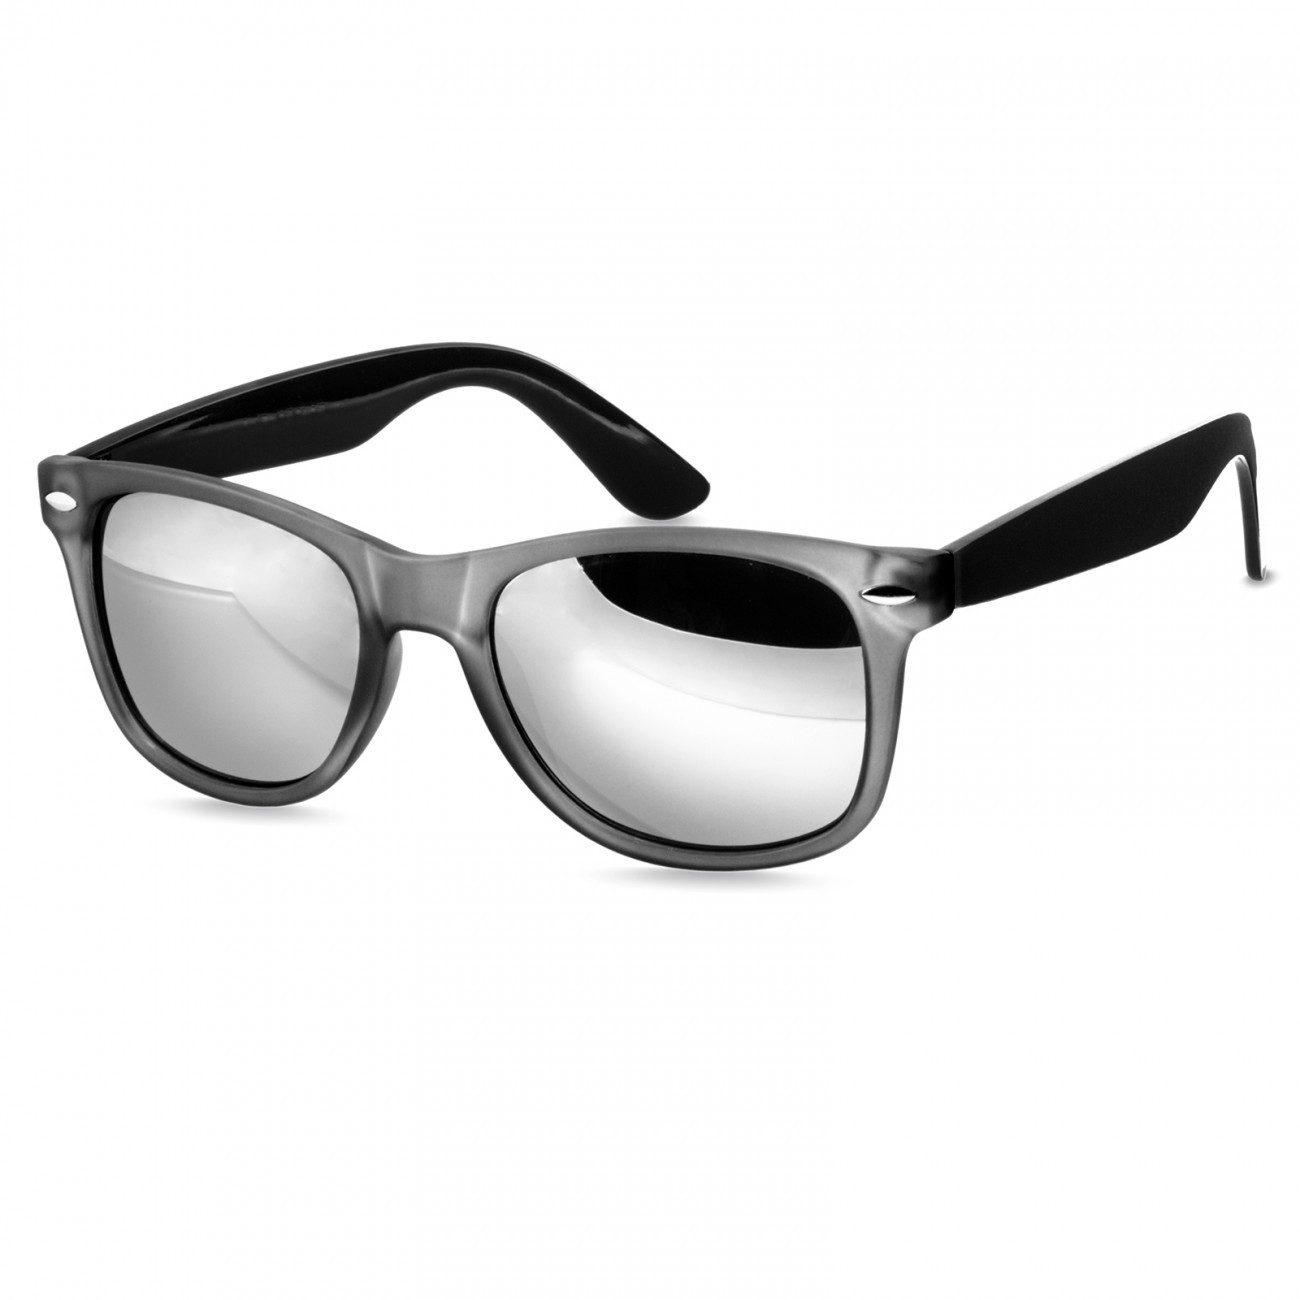 Caspar Sonnenbrille SG031 Unisex Classic Retro Design Sonnenbrille